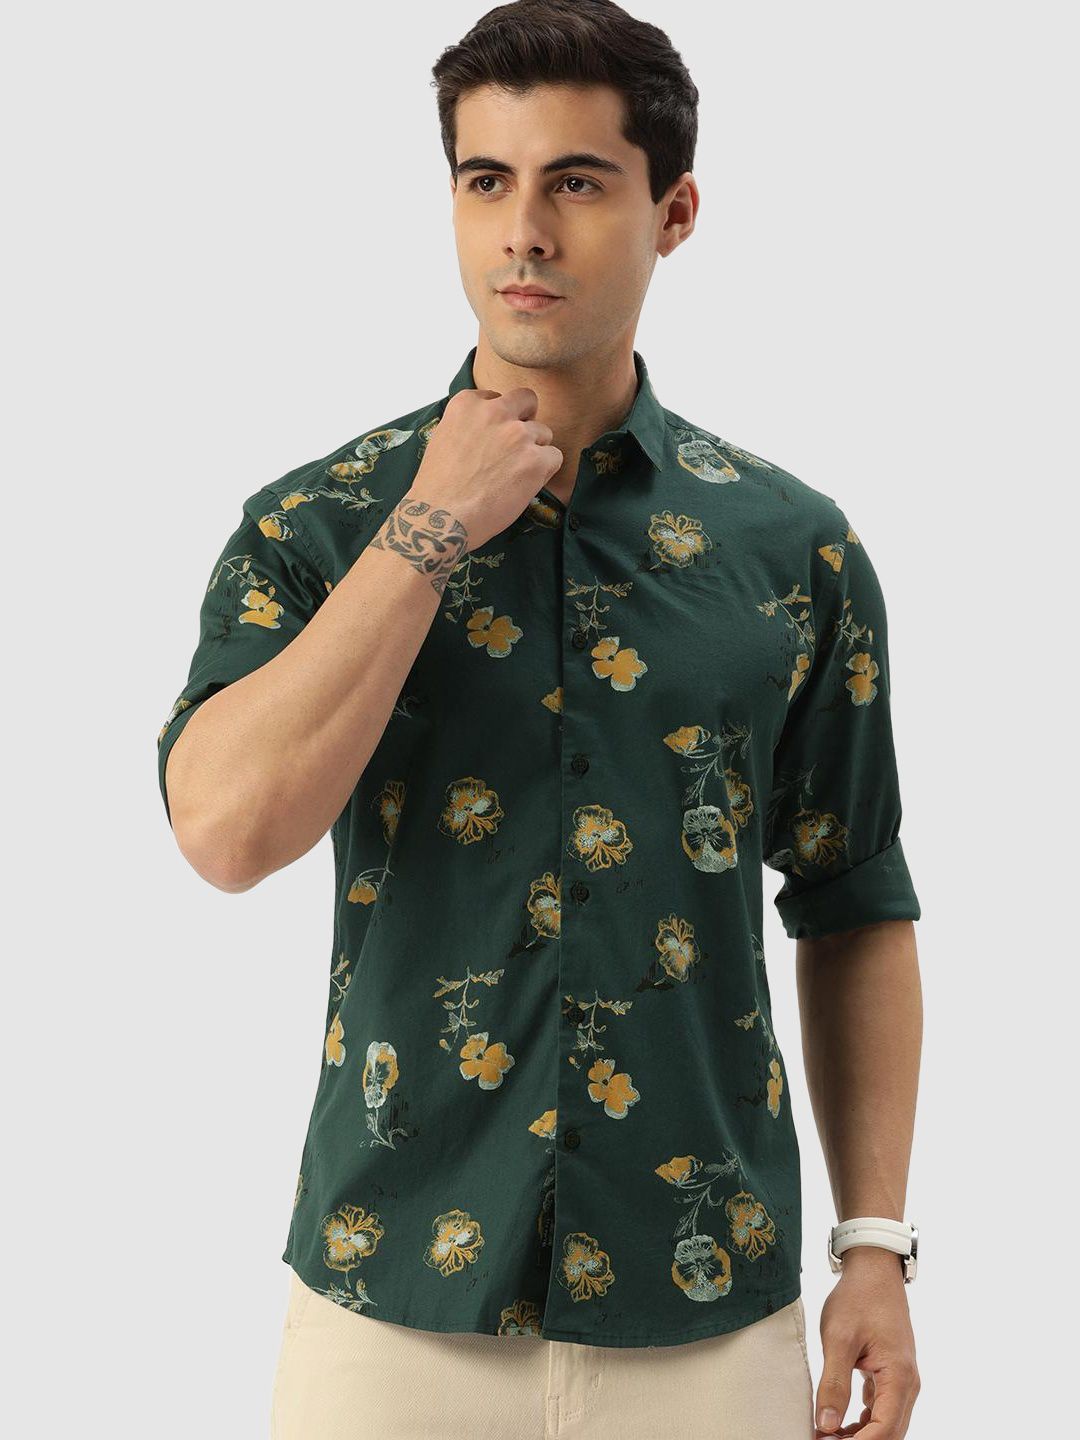     			Bene Kleed - Green Cotton Blend Regular Fit Men's Casual Shirt ( Pack of 1 )